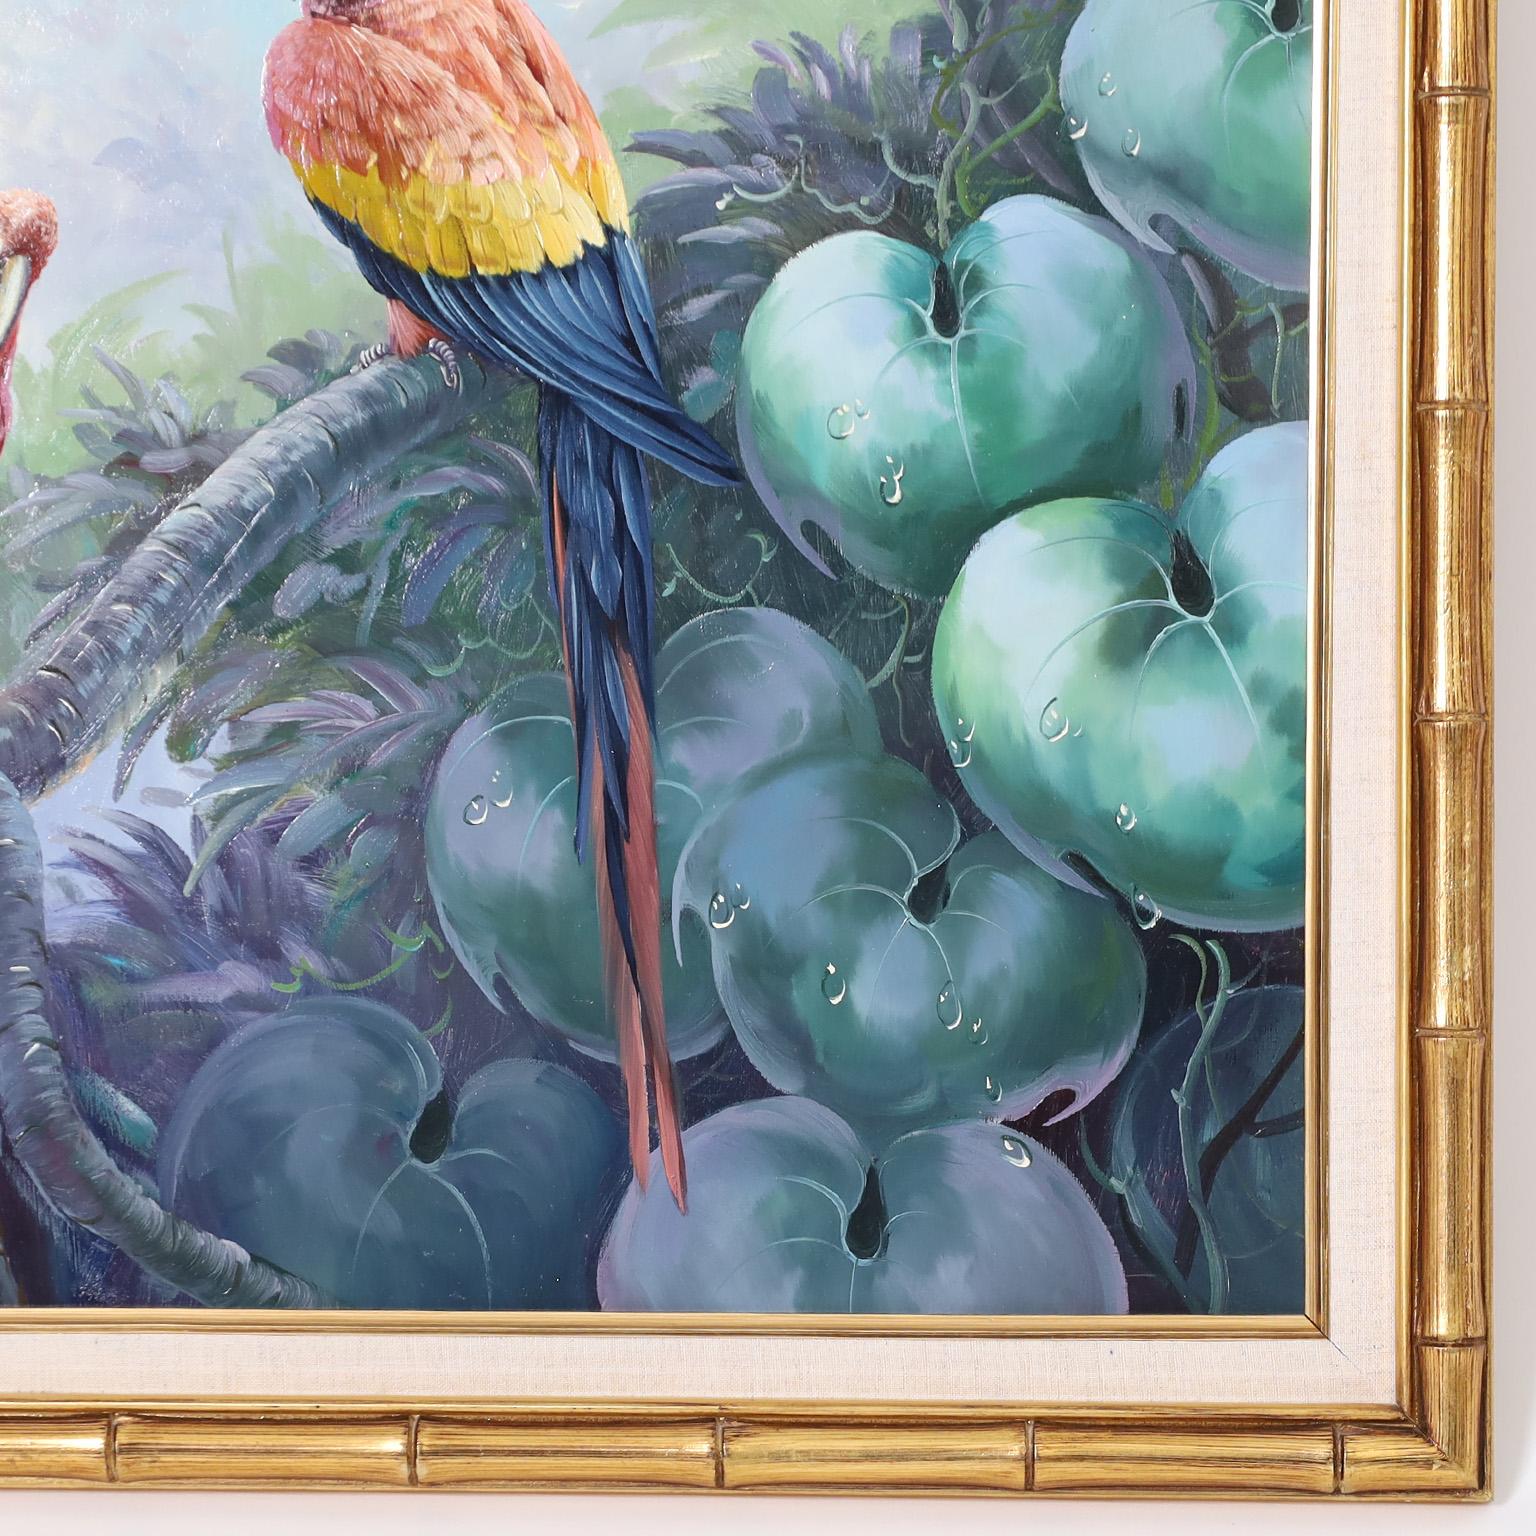 Saisissante peinture à l'huile sur toile représentant trois perroquets dans un décor naturel de forêt tropicale, exécutée avec la technique de l'hyperréalisme. Signé par le célèbre artiste américain Andre Lange et présenté dans un cadre en bois doré